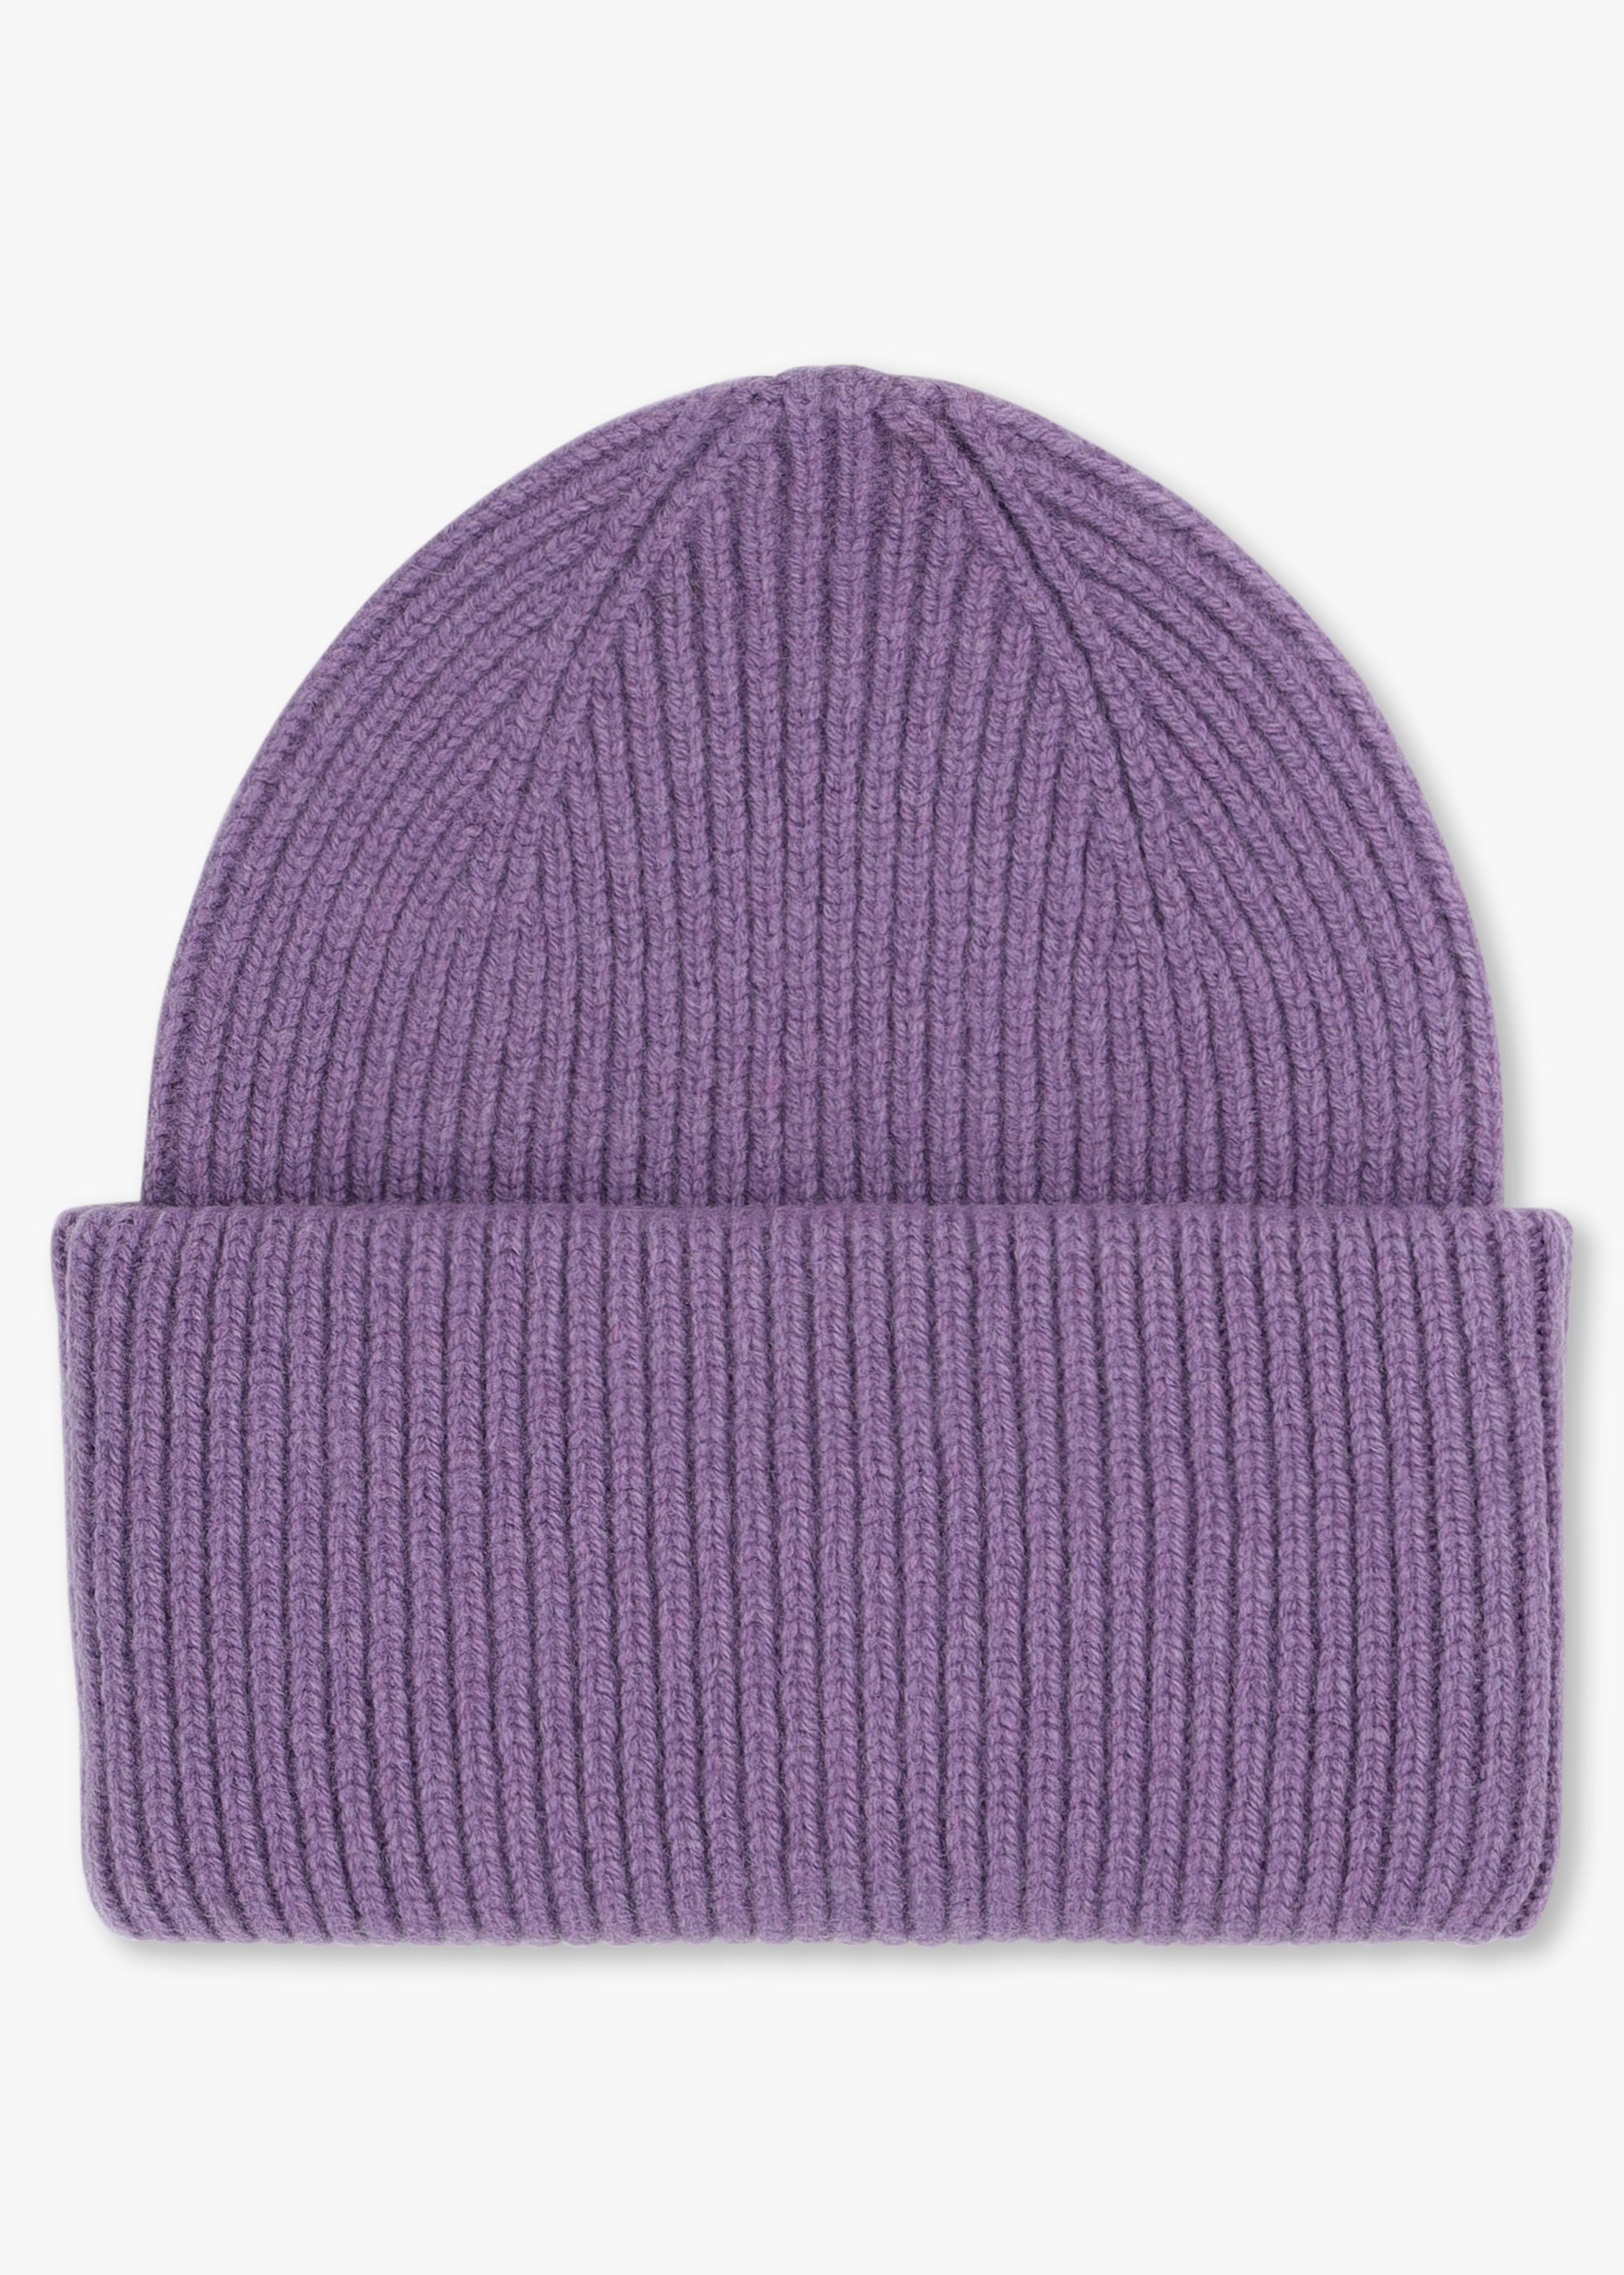 Colorful Standard Unisex Merino Wool Hat In Purple Haze